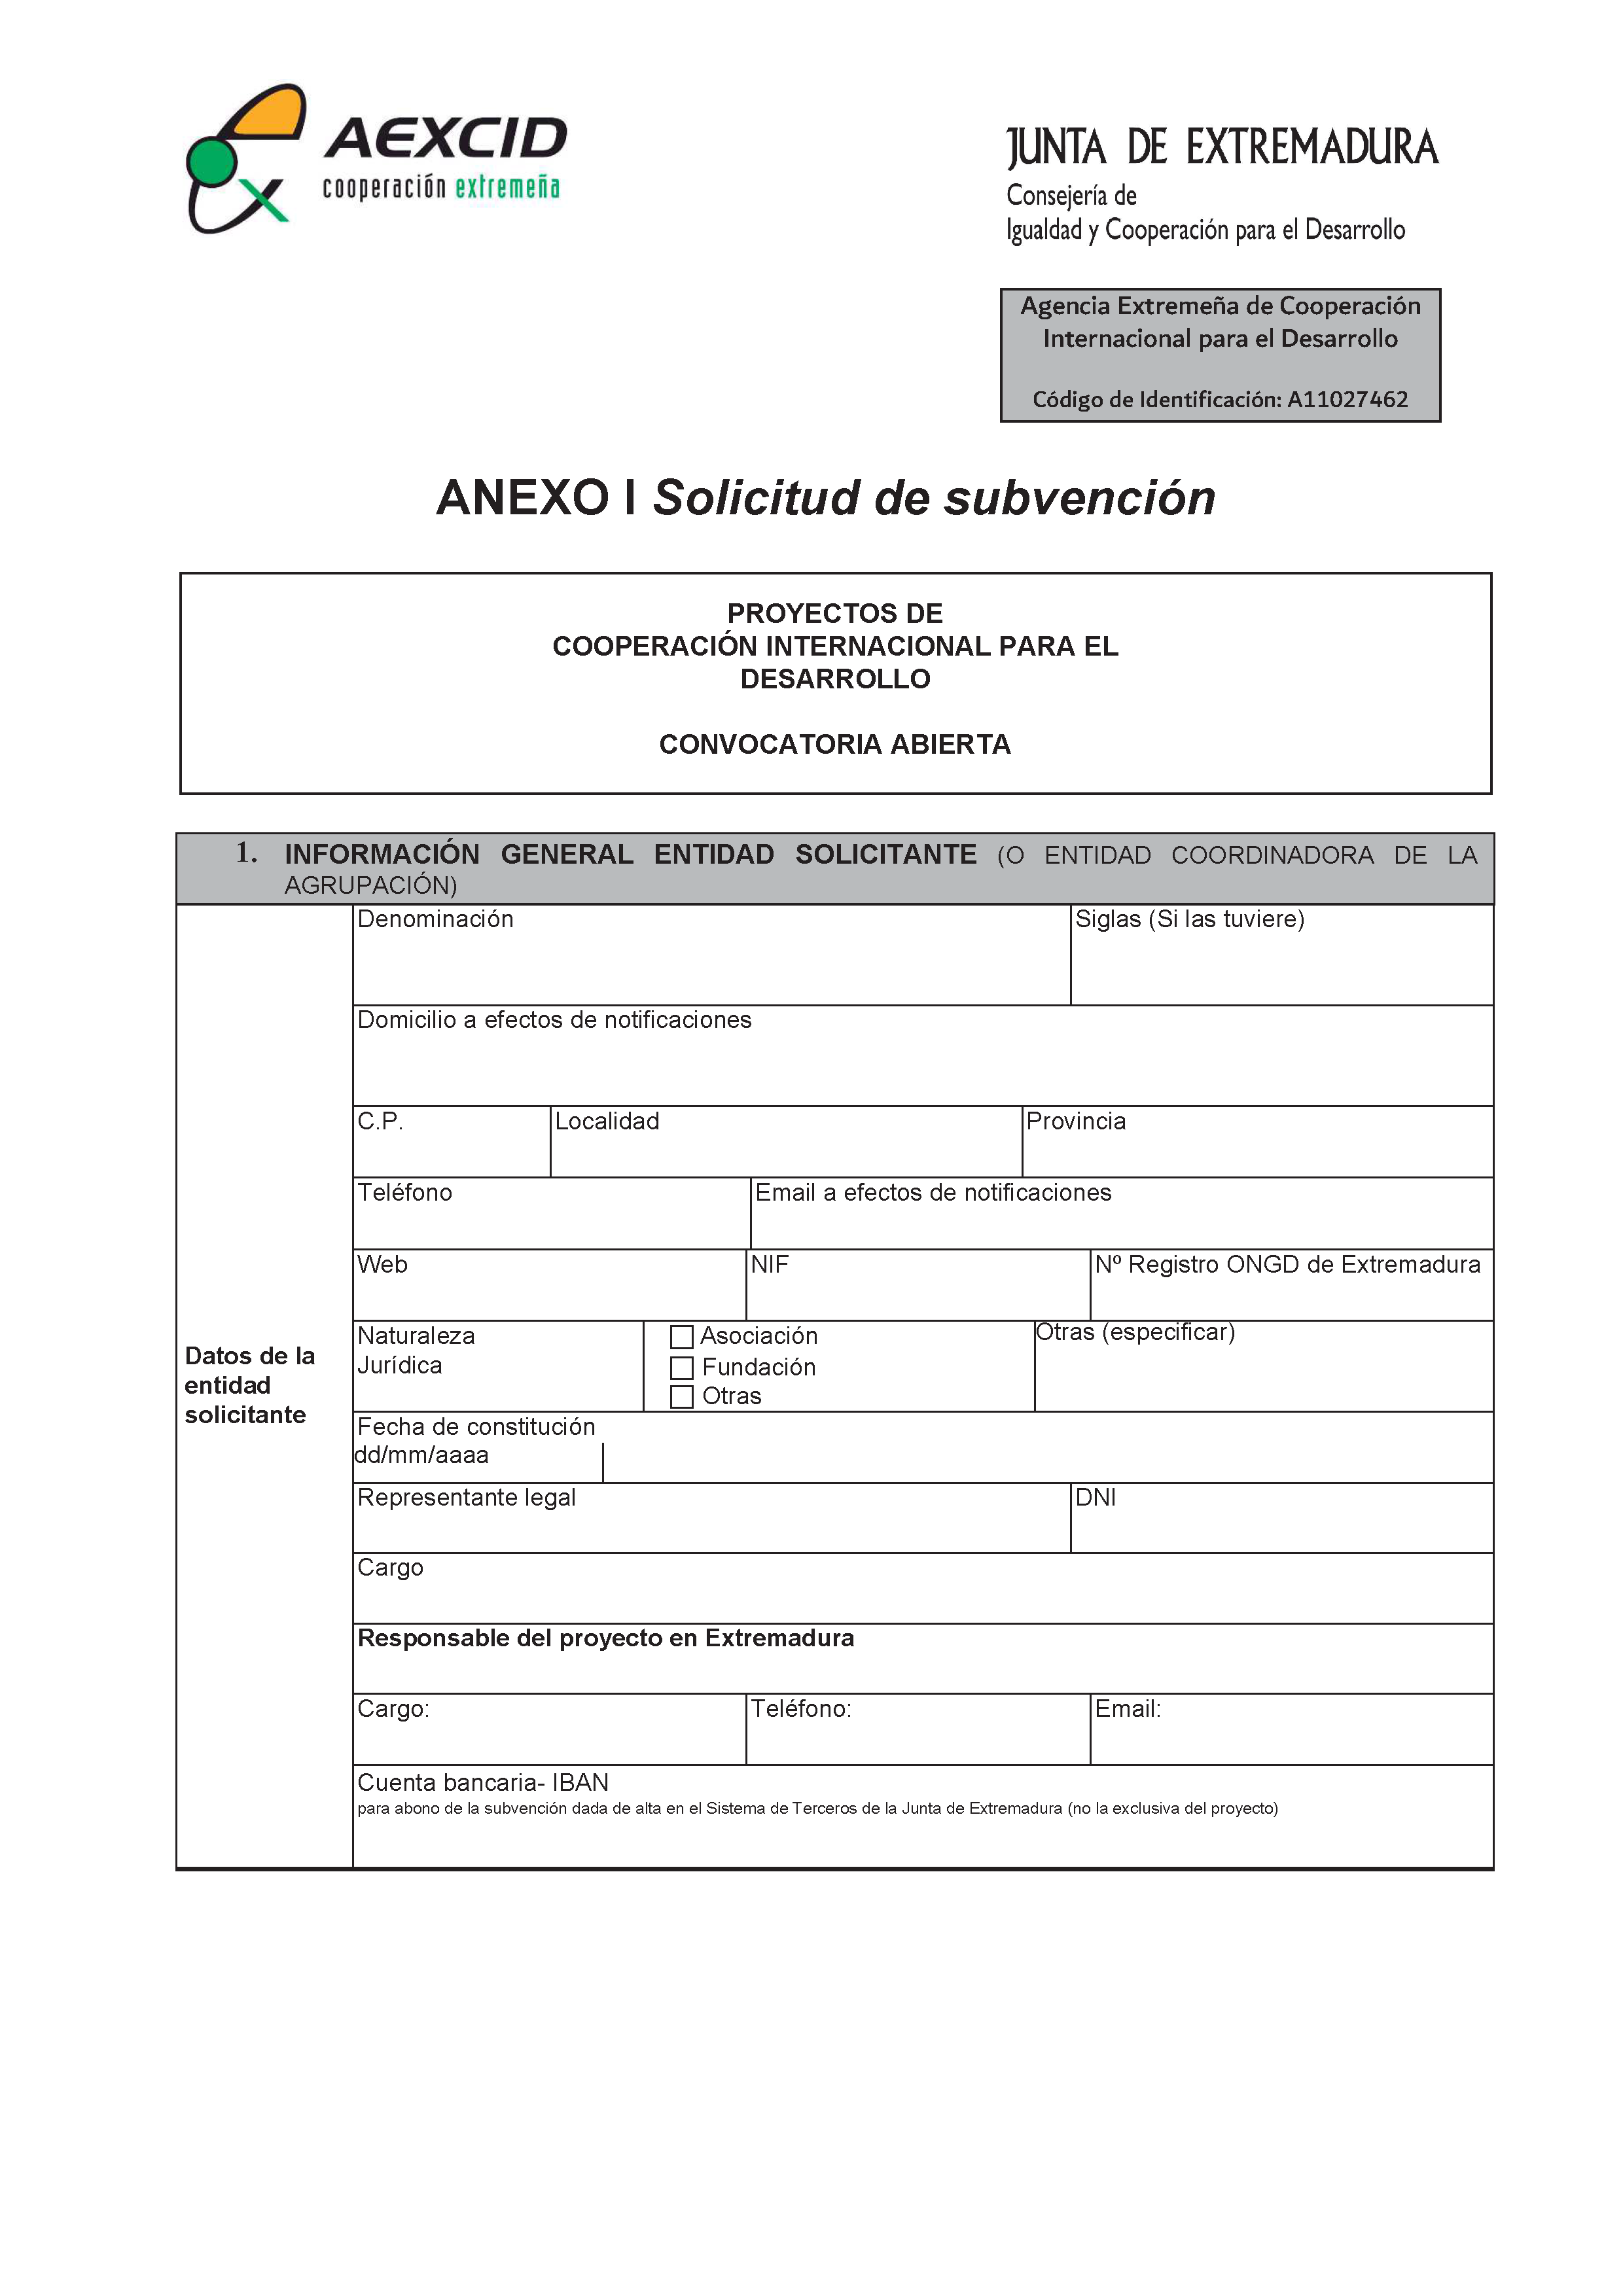 ANEXO 1 SOLICITUD DE SUBENCION Pag 1